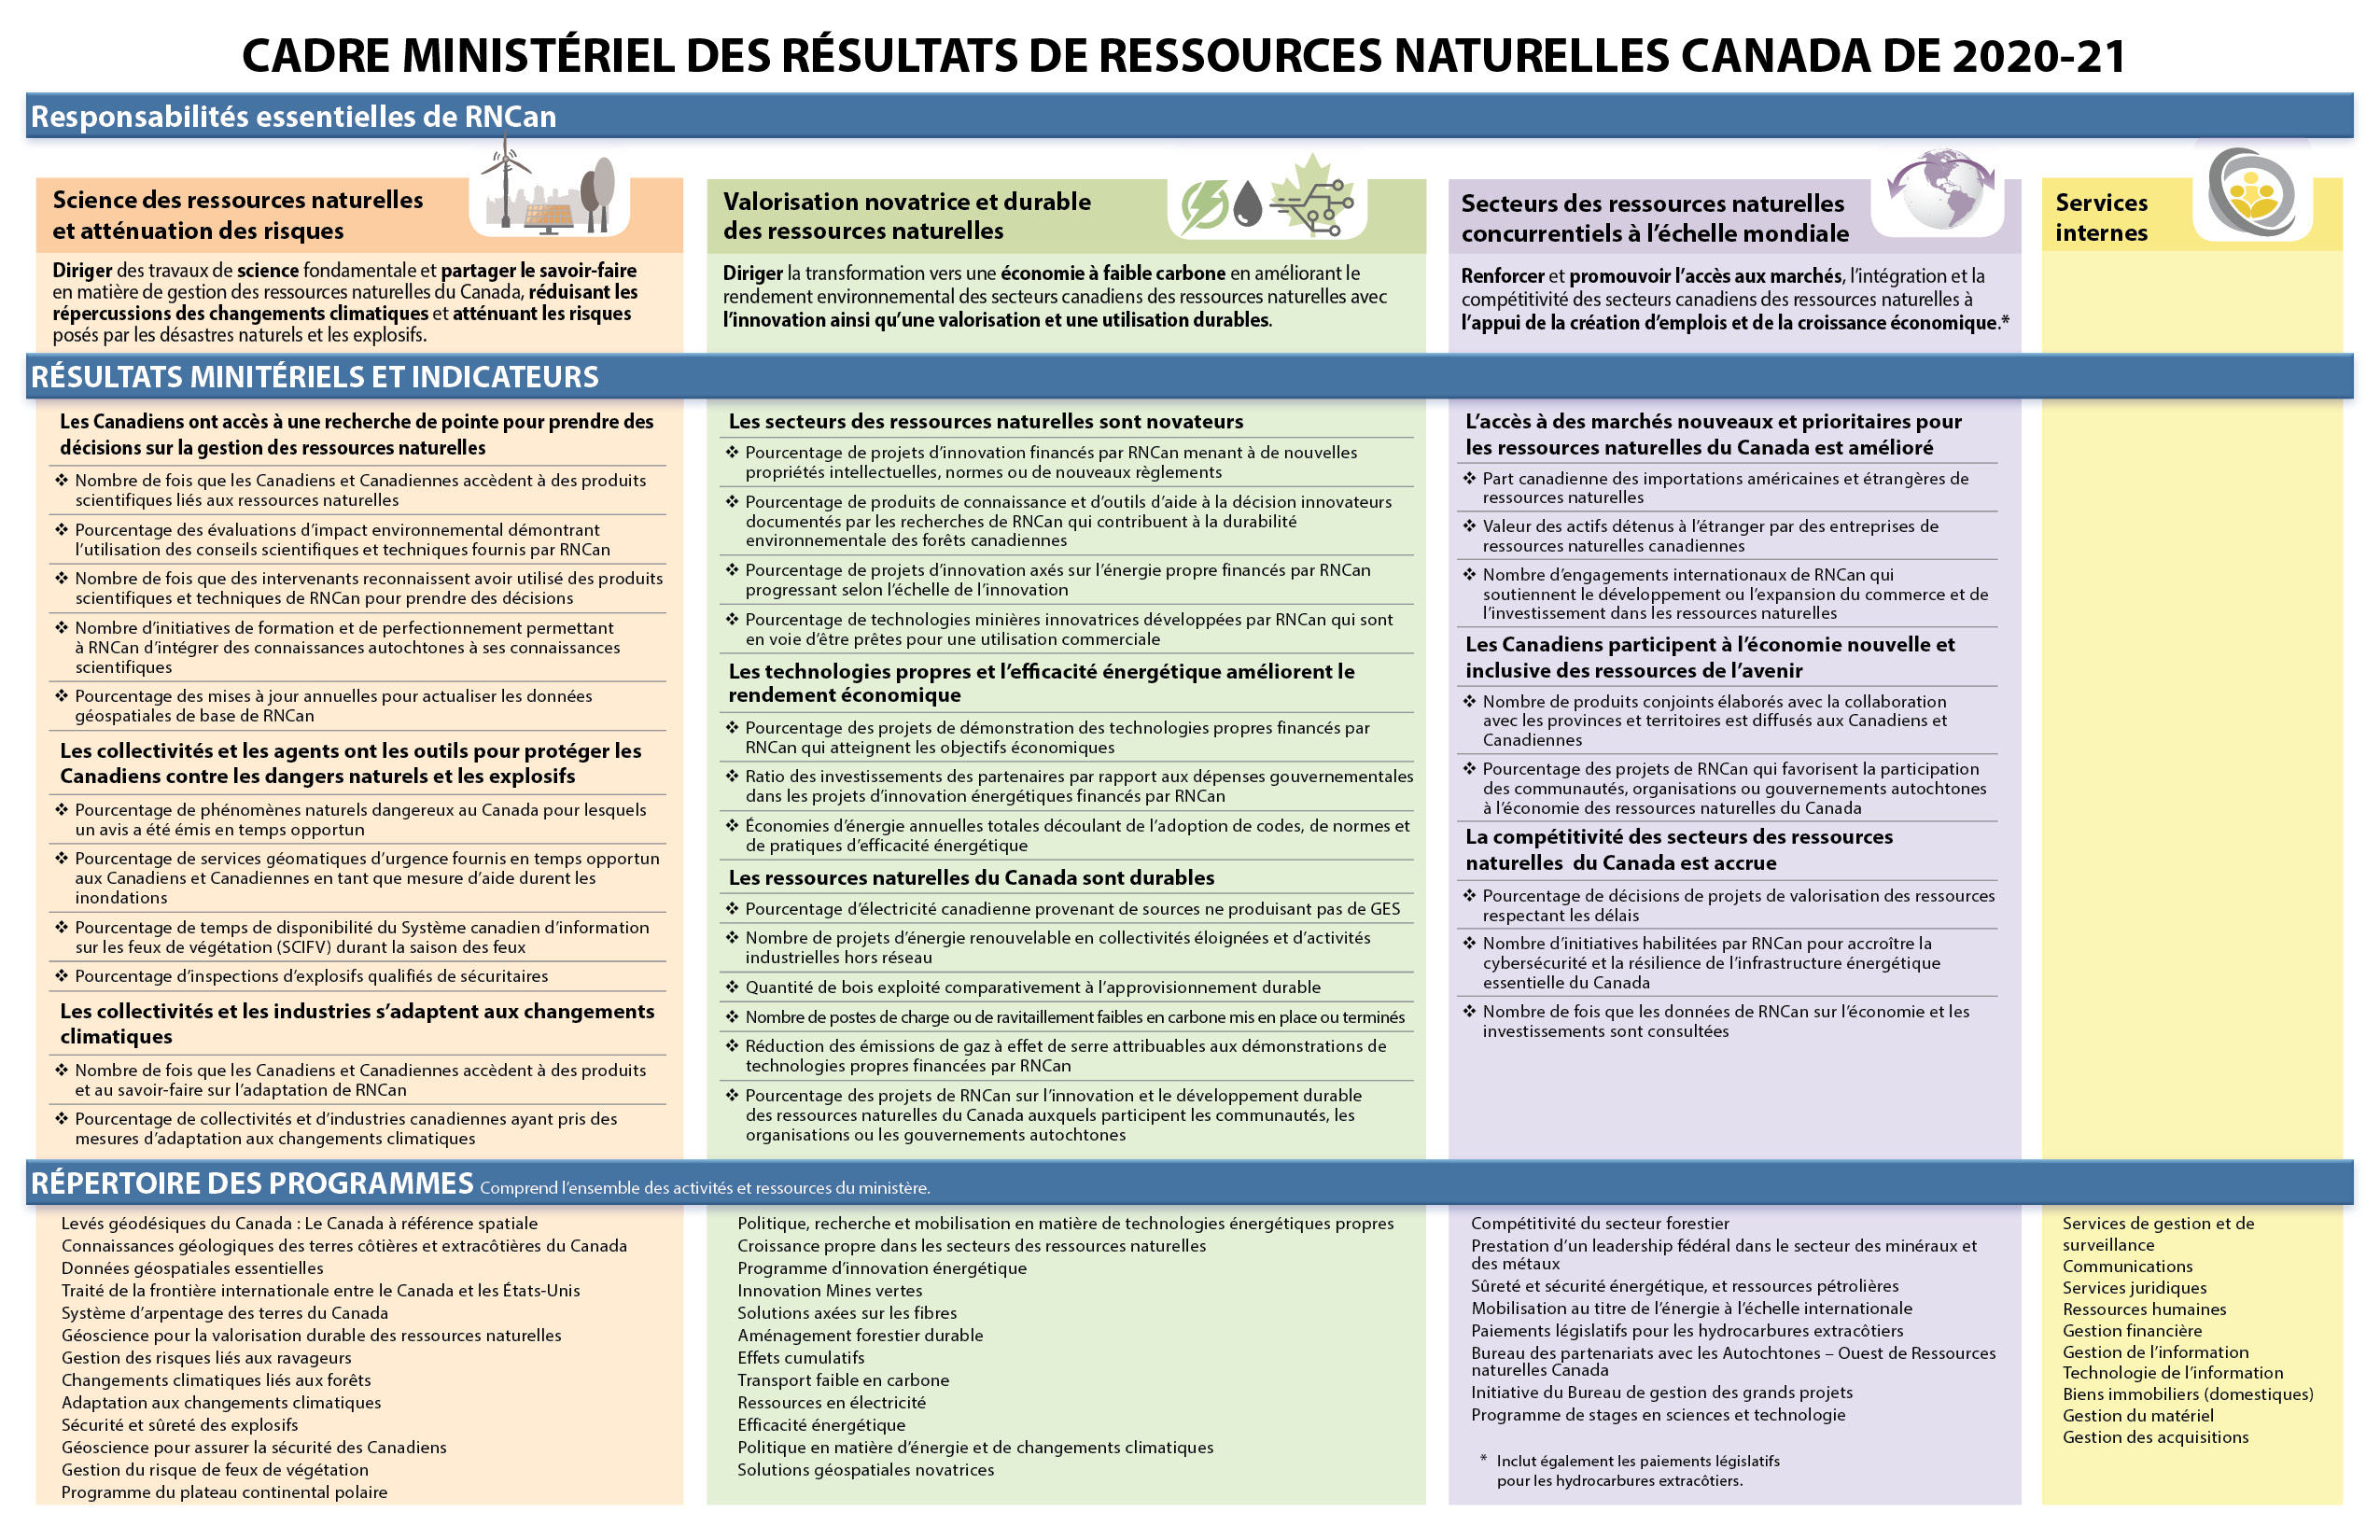 graphique montrant le cadre ministériel des résultats de Ressources naturelles Canada 2020-2021